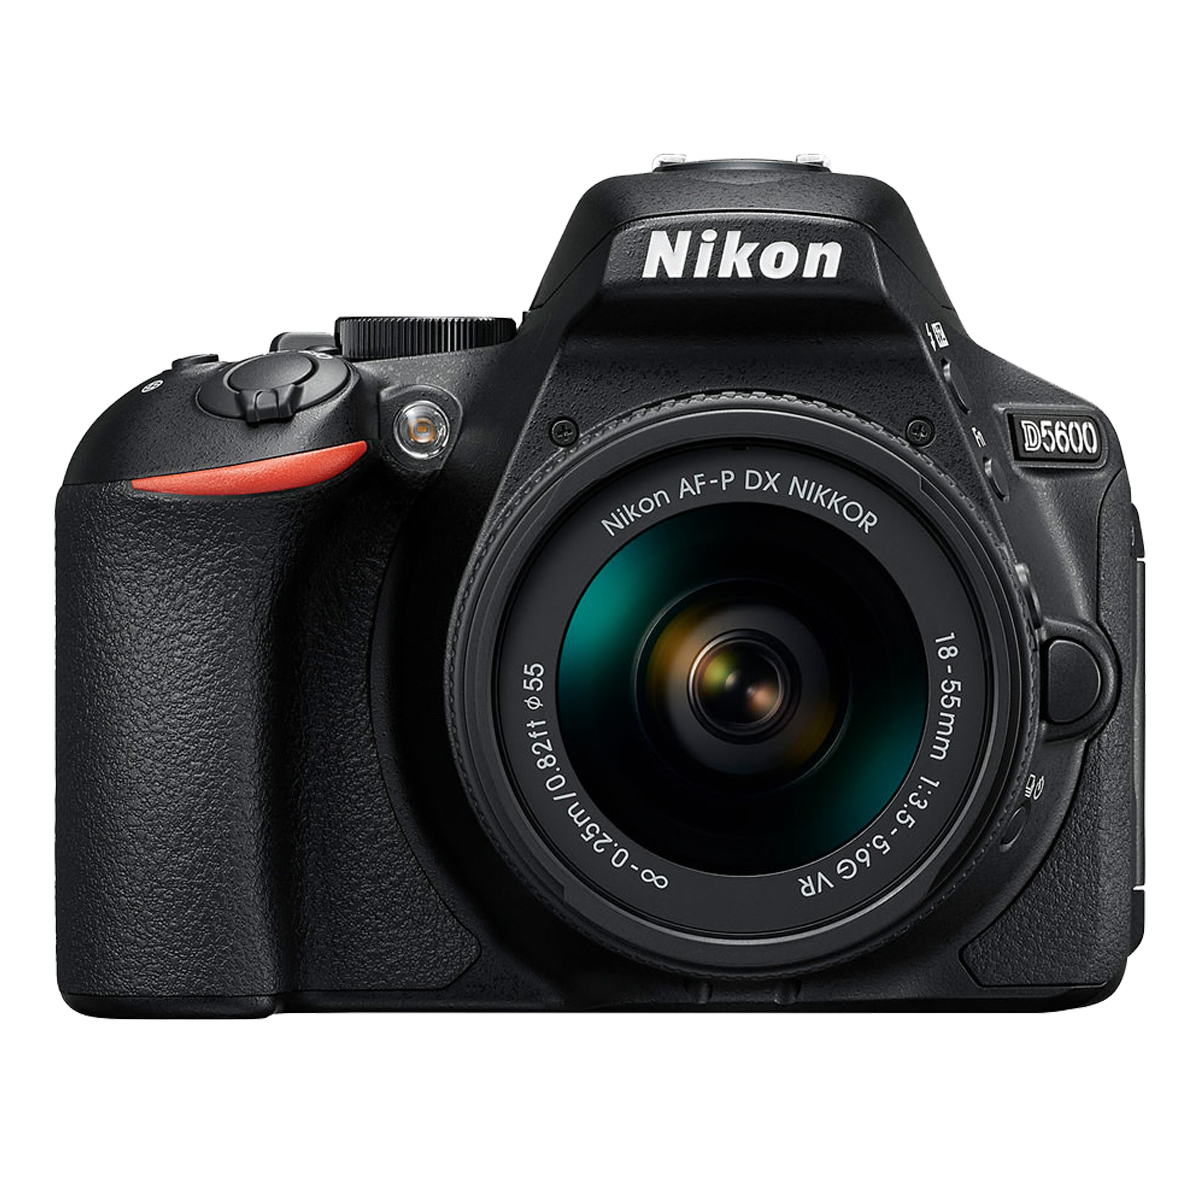 DSLR-Kamera 18-55 VR D5600 AF-P Black, NIKON LCD, WLAN- Spiegelreflexkamera mm f/3.5-5.6G Objektiv +